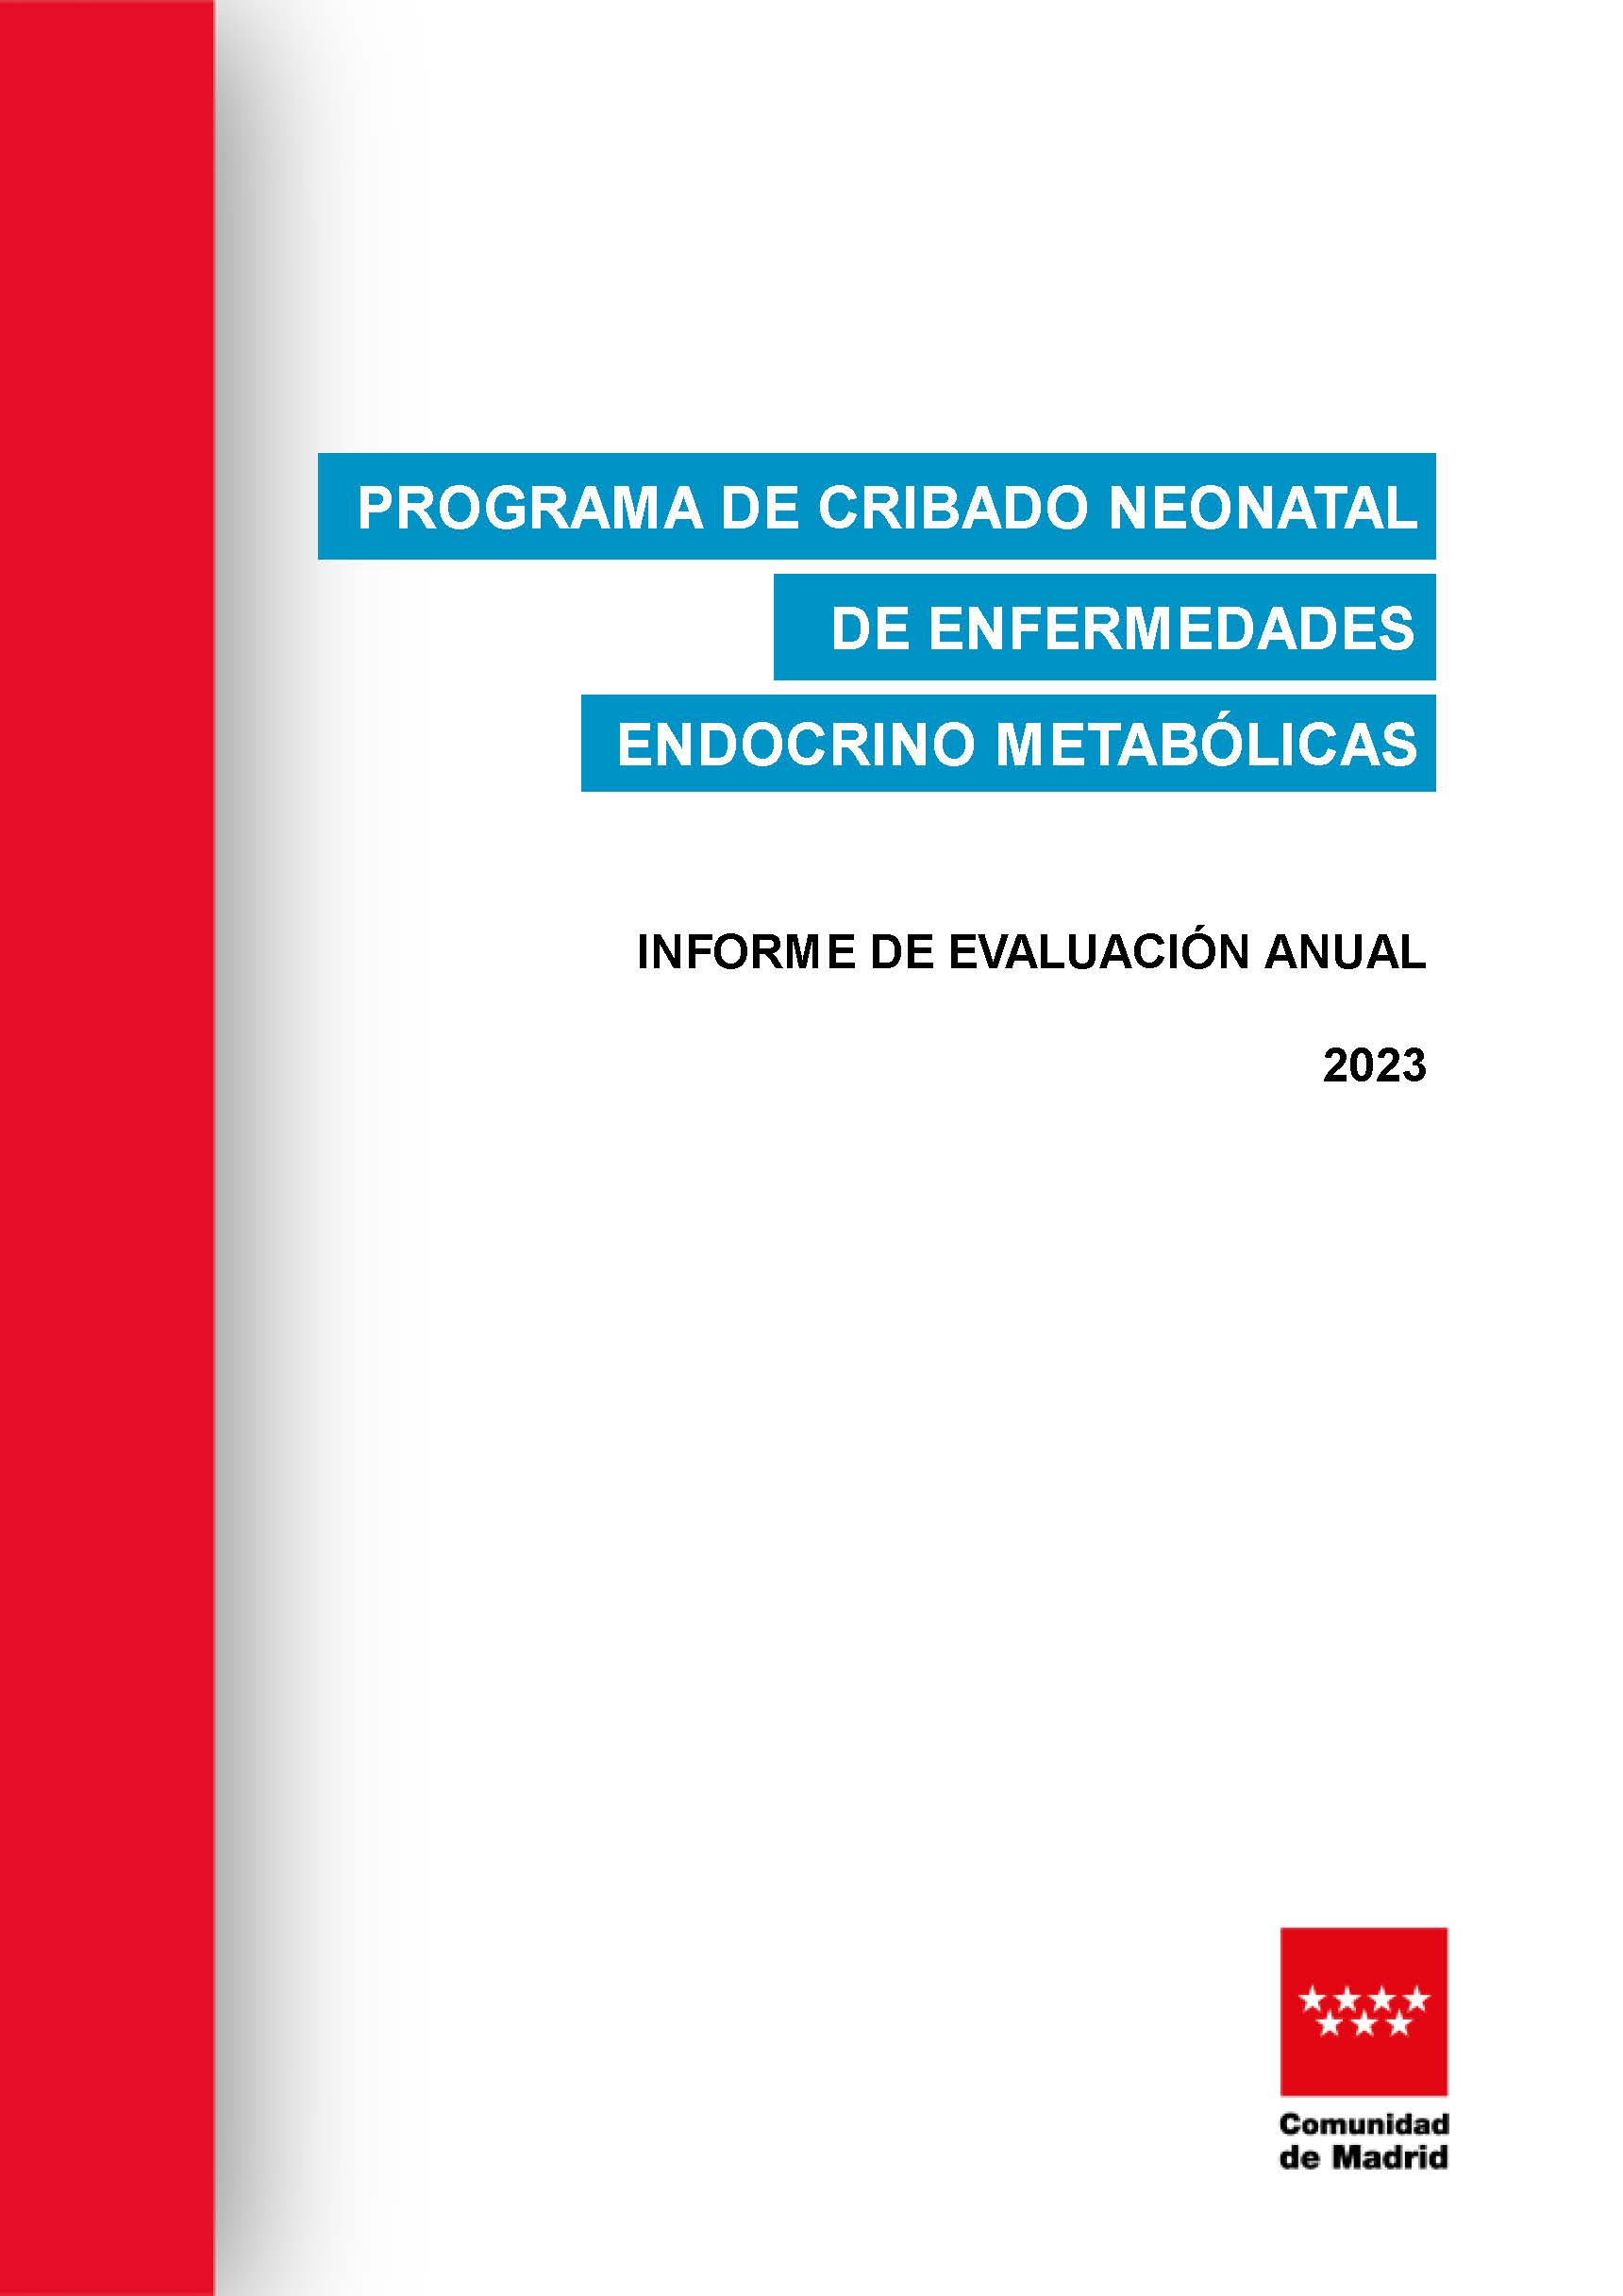 Portada de Programa de Cribado Neonatal de Enfermedades Endocrino-Metabólicas de la Comunidad de Madrid. Informe de Evaluación Anual. Año 2023.